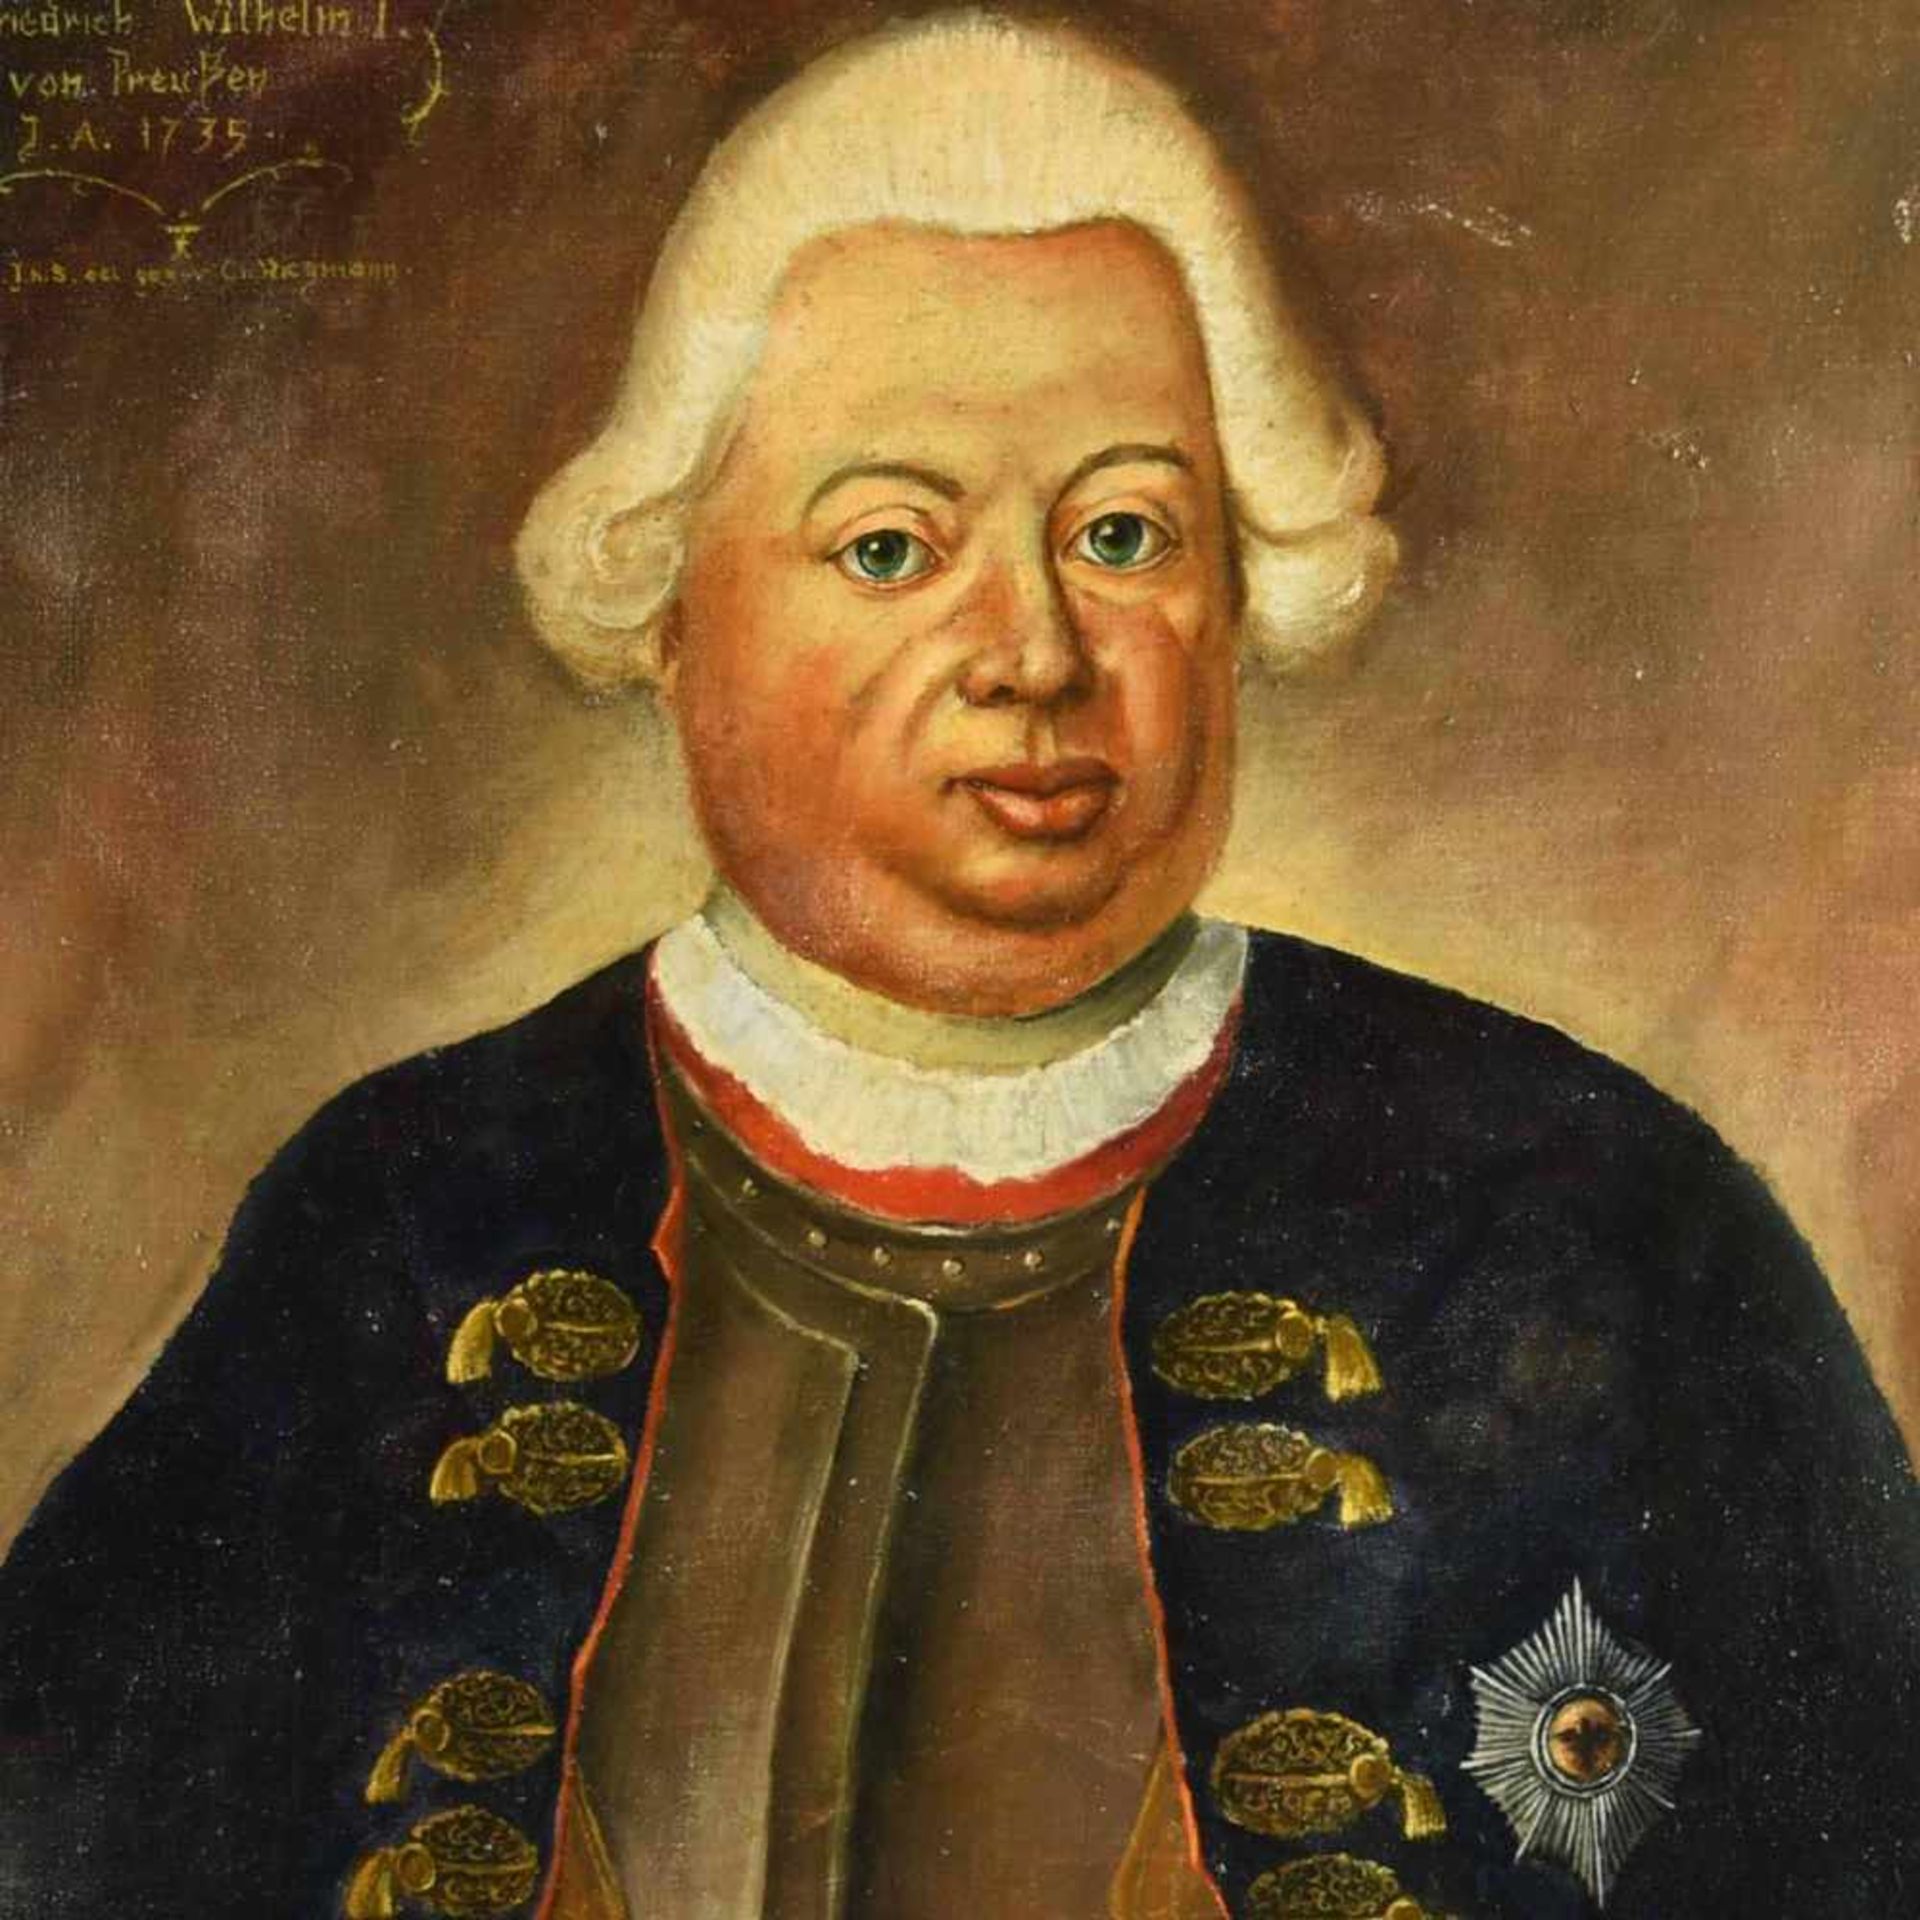 Wiegmann, C. W. Öl/Lwd., Porträt König Friedrich Wilhelm I. von Preußen nach einem historischem